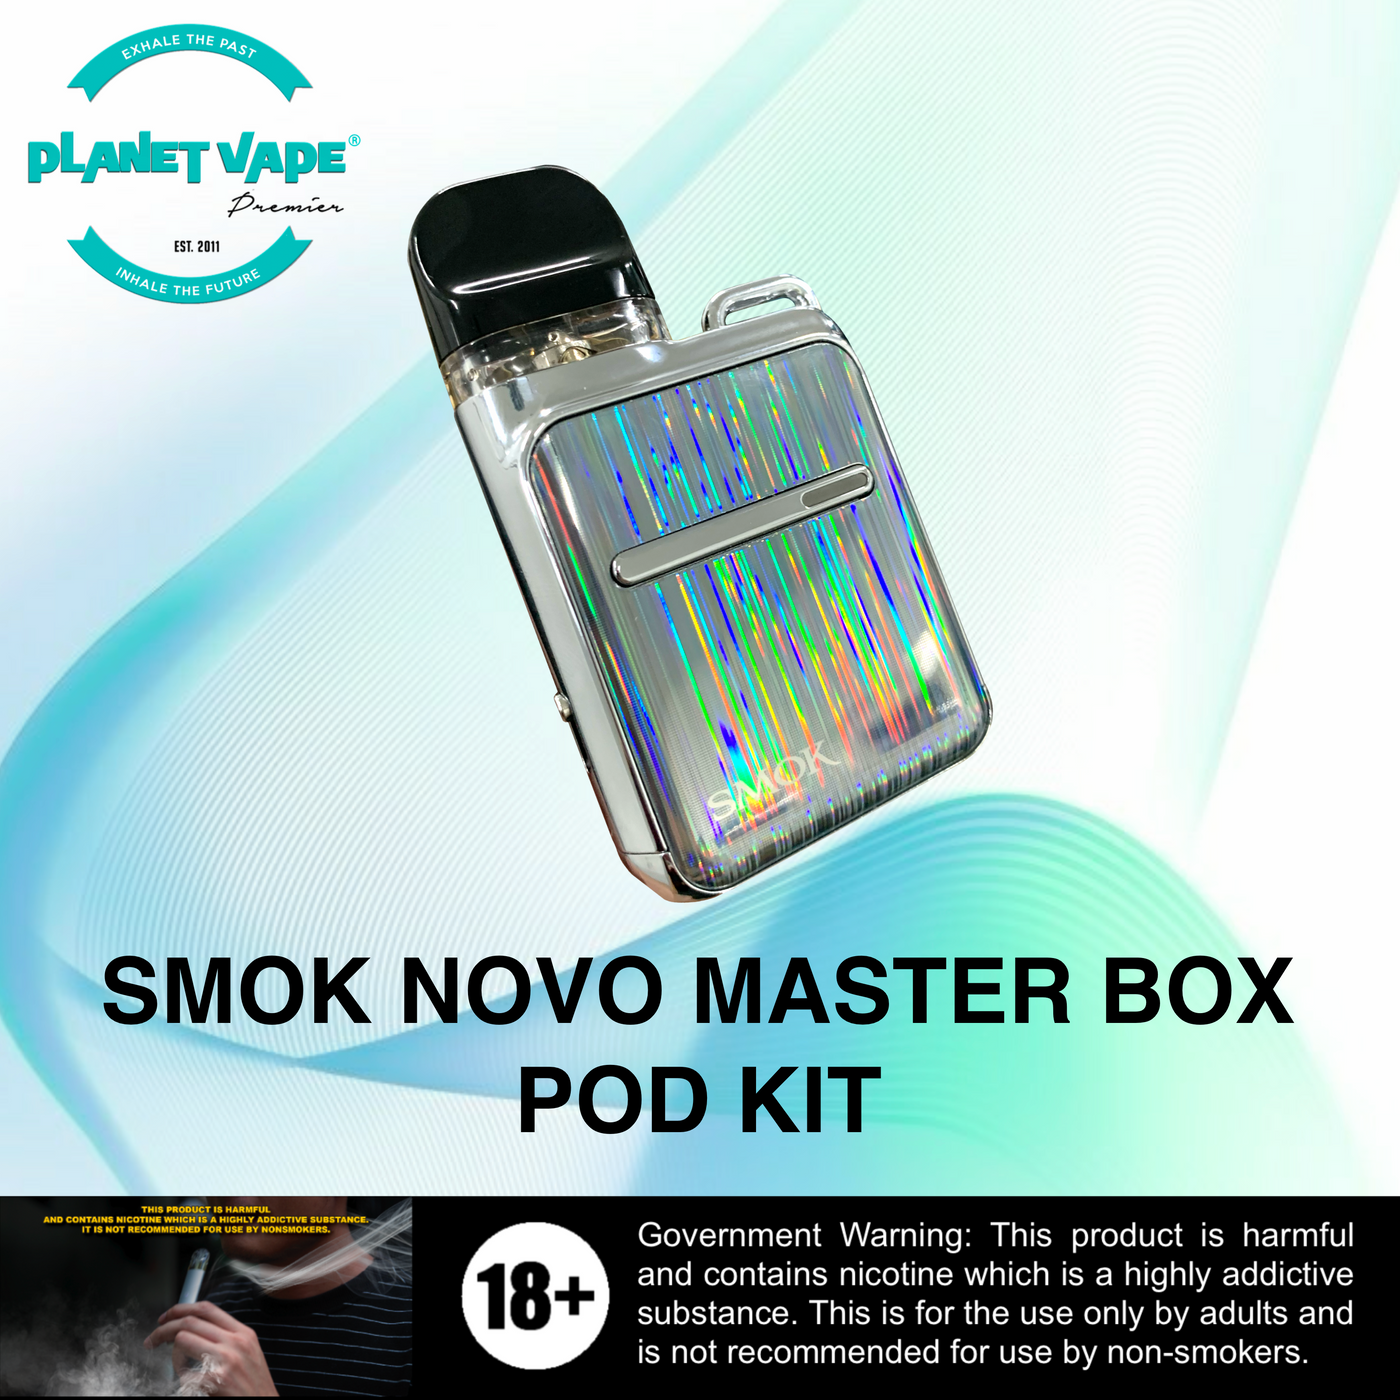 SMOK Novo Master Box Kit